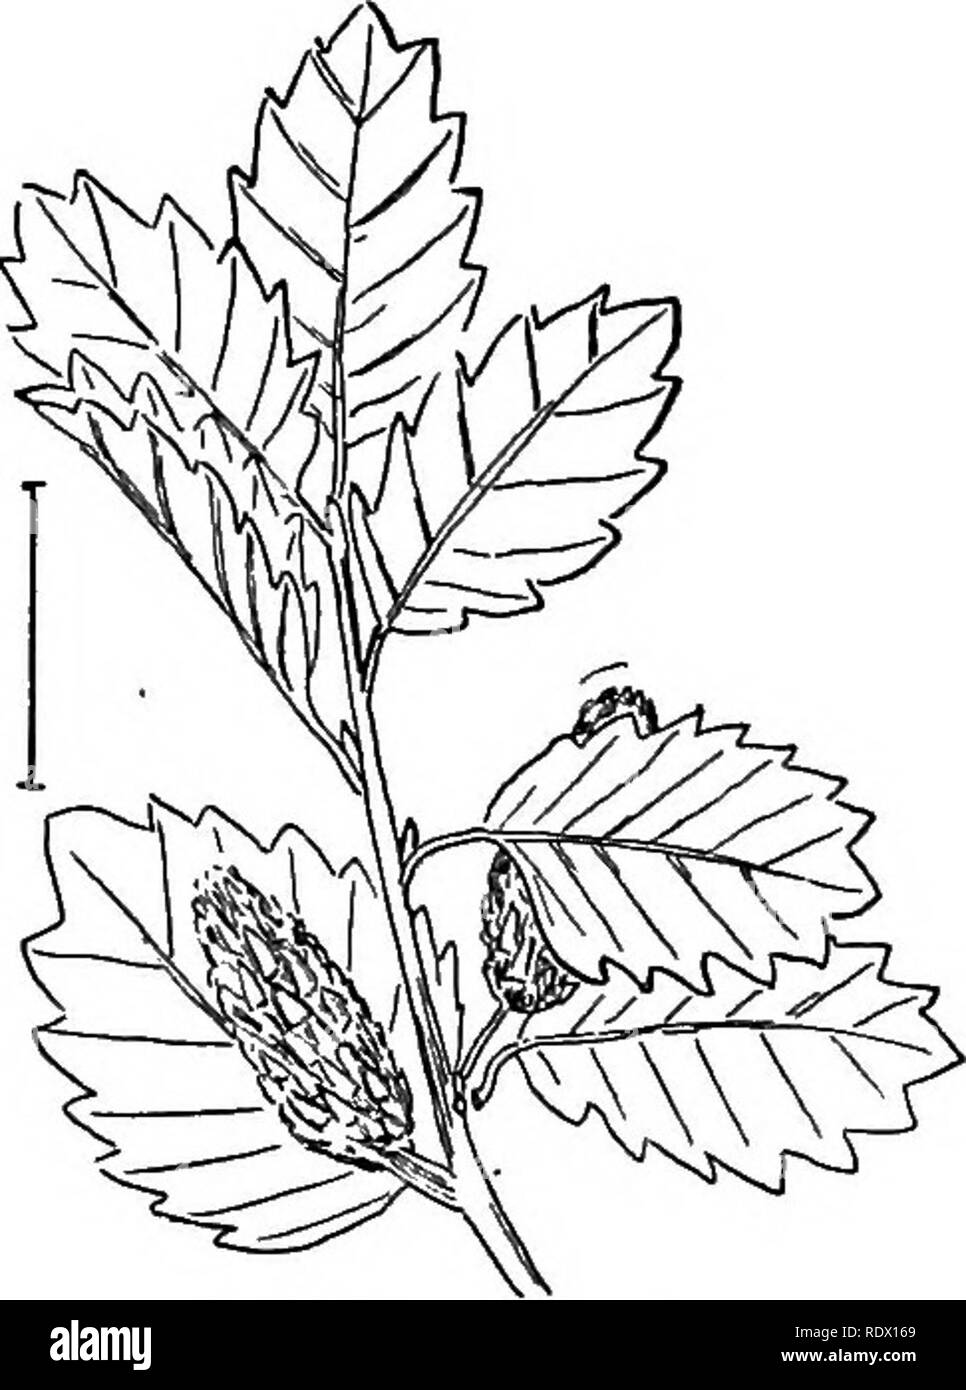 . Les arbustes ornementaux de l'United States (hardy, cultivé). Des arbustes. Fig. 554. -Bouleau glanduleux. Fig. 555. - Faible Bouleau. (555) - Bouleau Betula, ptimila - 2 à 15 pieds de haut avec des feuilles arrondies et moins plus dense de poils brunâtre ayant ci-dessous lorsque les jeunes ; et bouleau arbustif (556) hiunilis - Betula, - 2 à 6 pieds de haut, avec tvrigs crenately-glandulaire et dentées feuilles lisses J à 1 pouces de long. [Graines.] Alnus. Les Aulnes sont généralement des plantes arbustives abondamment le long des ruisseaux et dans les endroits humides. Ils ont d'autres droits- simple encoche veiné de feuilles caduques et sécher les cônes arrondis qui rem Banque D'Images